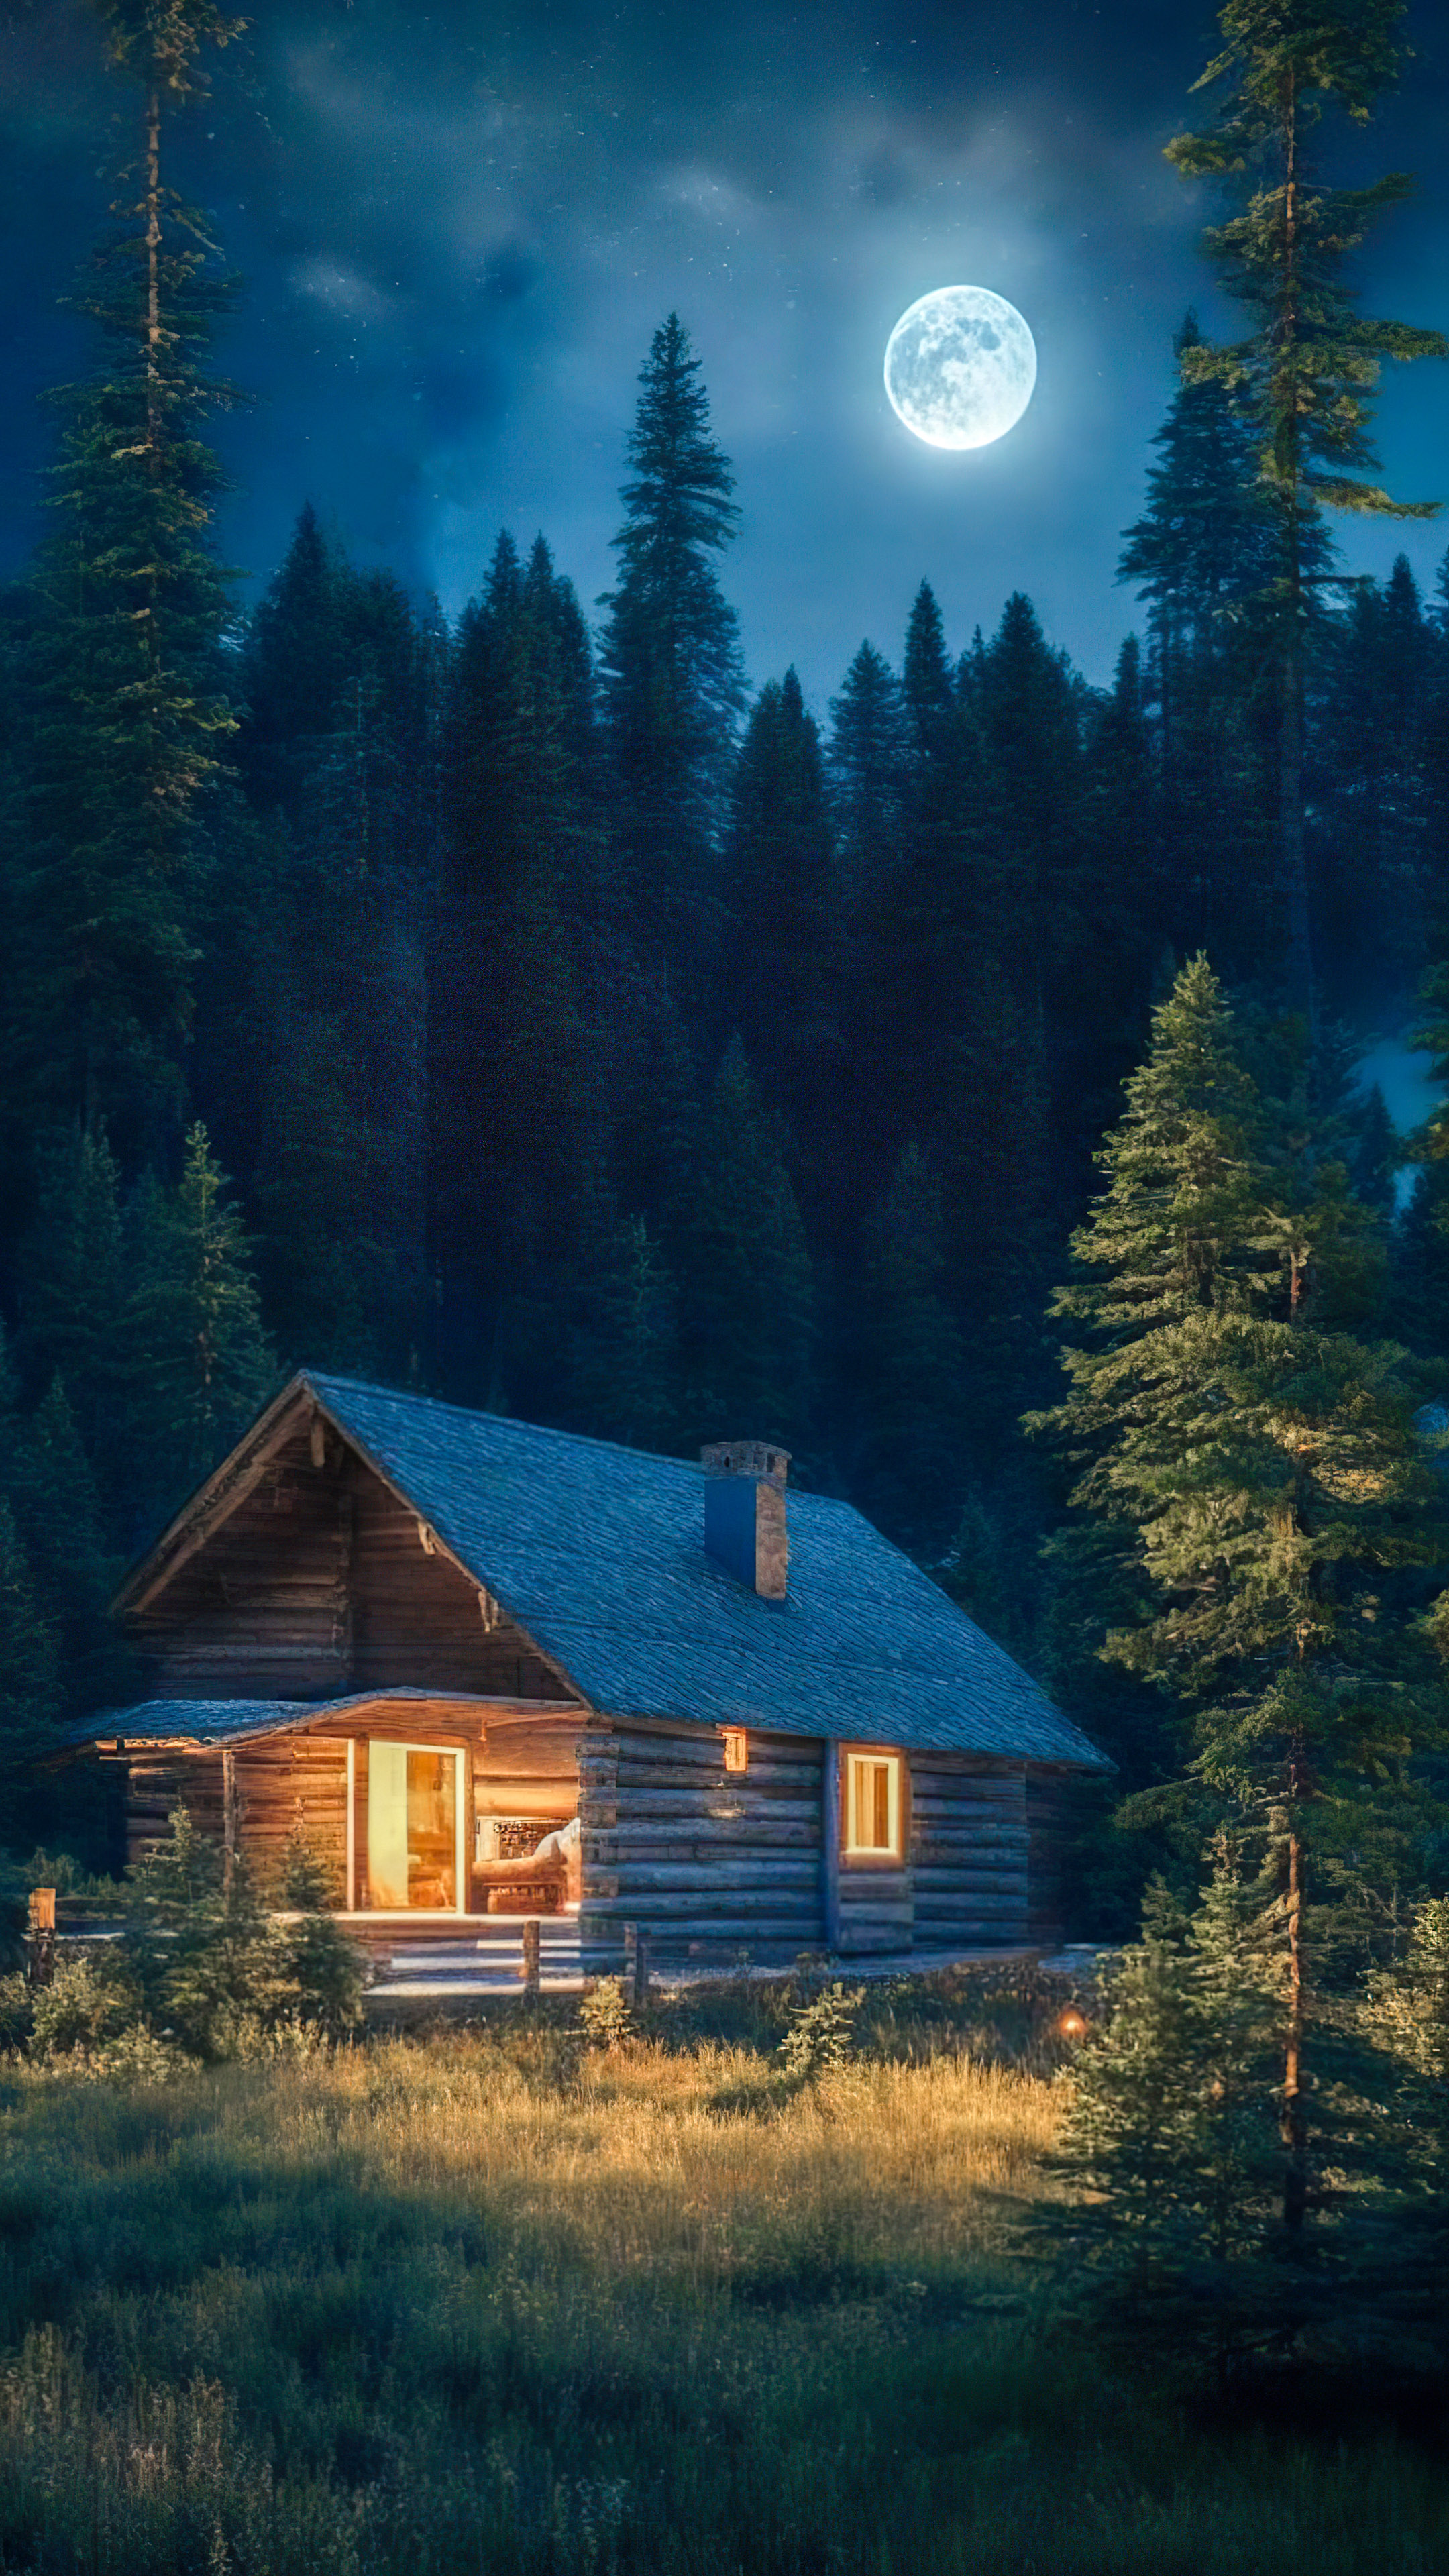 Embrassez la sérénité de notre fond d'écran de nature nocturne, dépeignant une cabane confortable nichée parmi les pins, baignée dans la douce lumière d'une pleine lune.